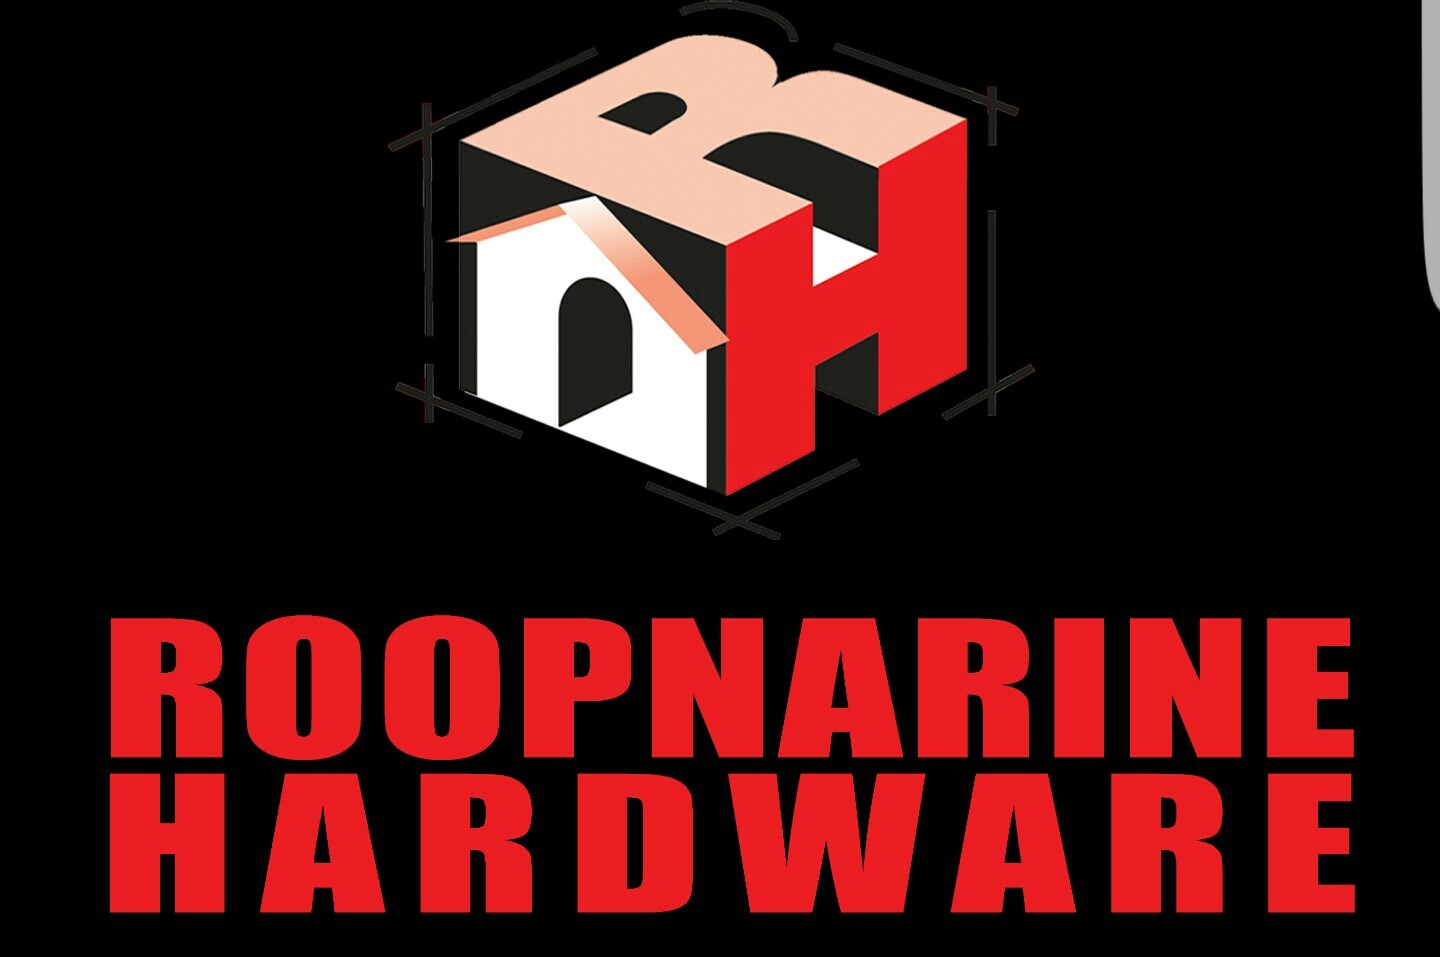 Roopnarine Hardware Limited